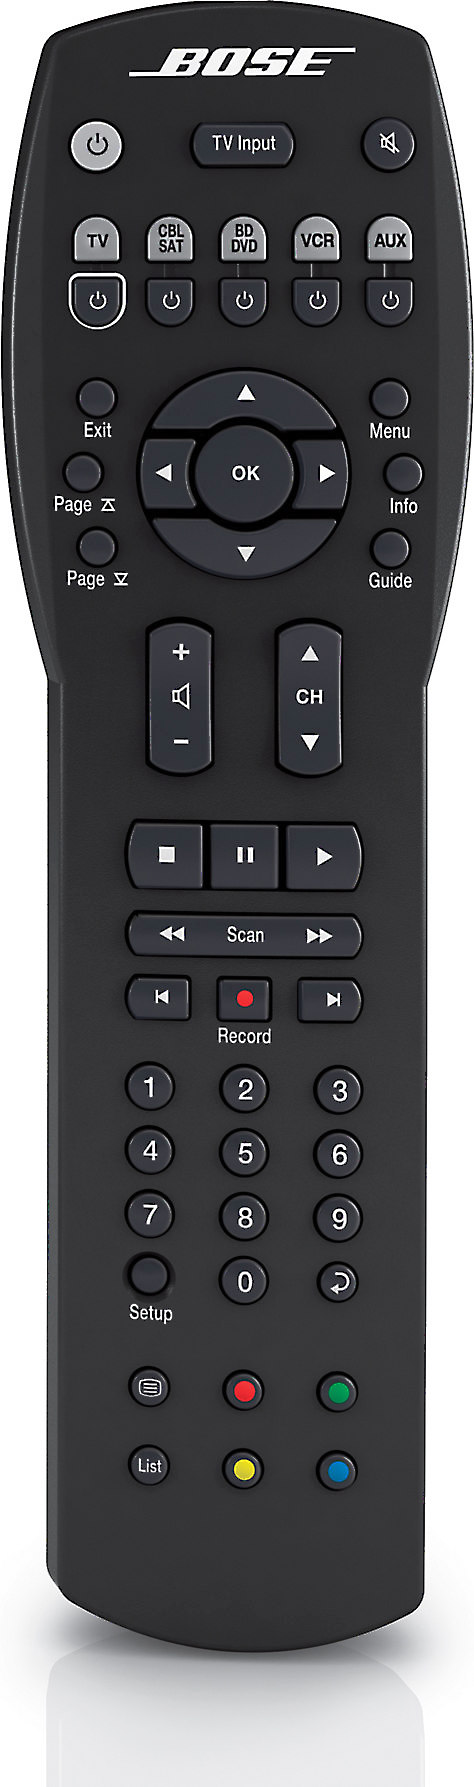 bose solo 4 button remote control